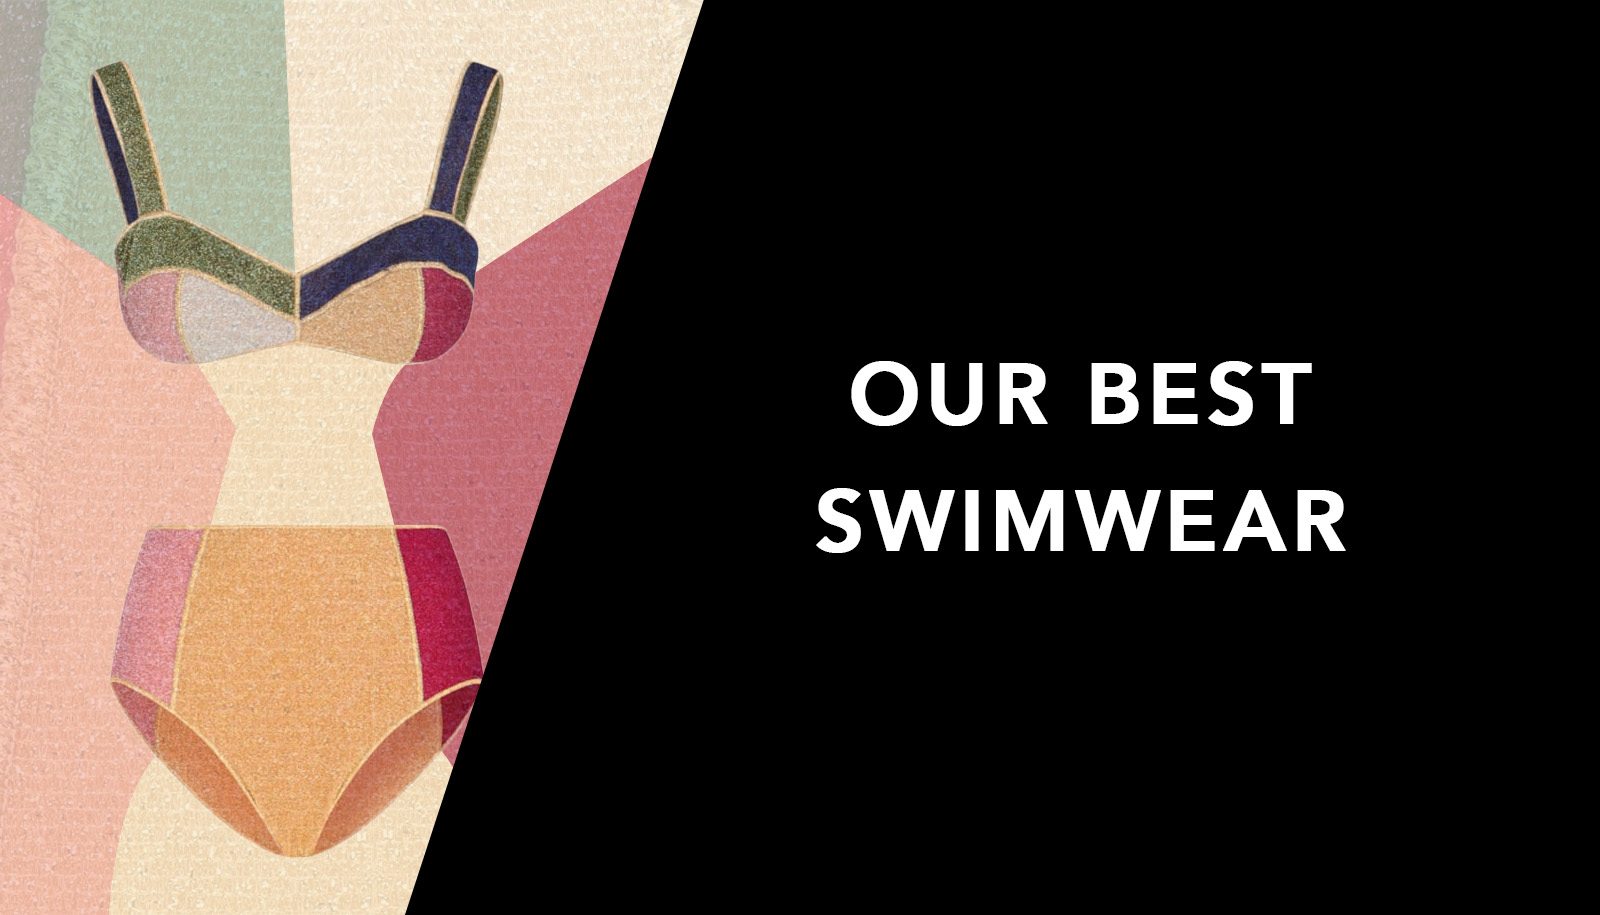 Our Best Swimwear